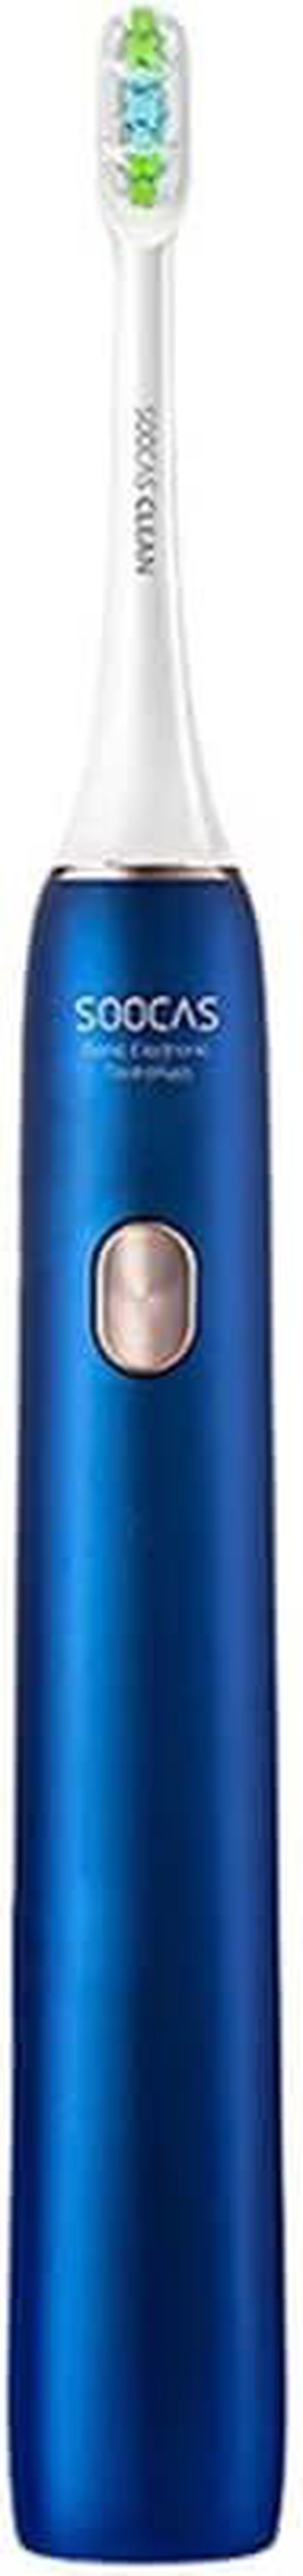 Электрическая зубная щетка Xiaomi Soocas X3U & Van Gogh Museum Design, синий фото